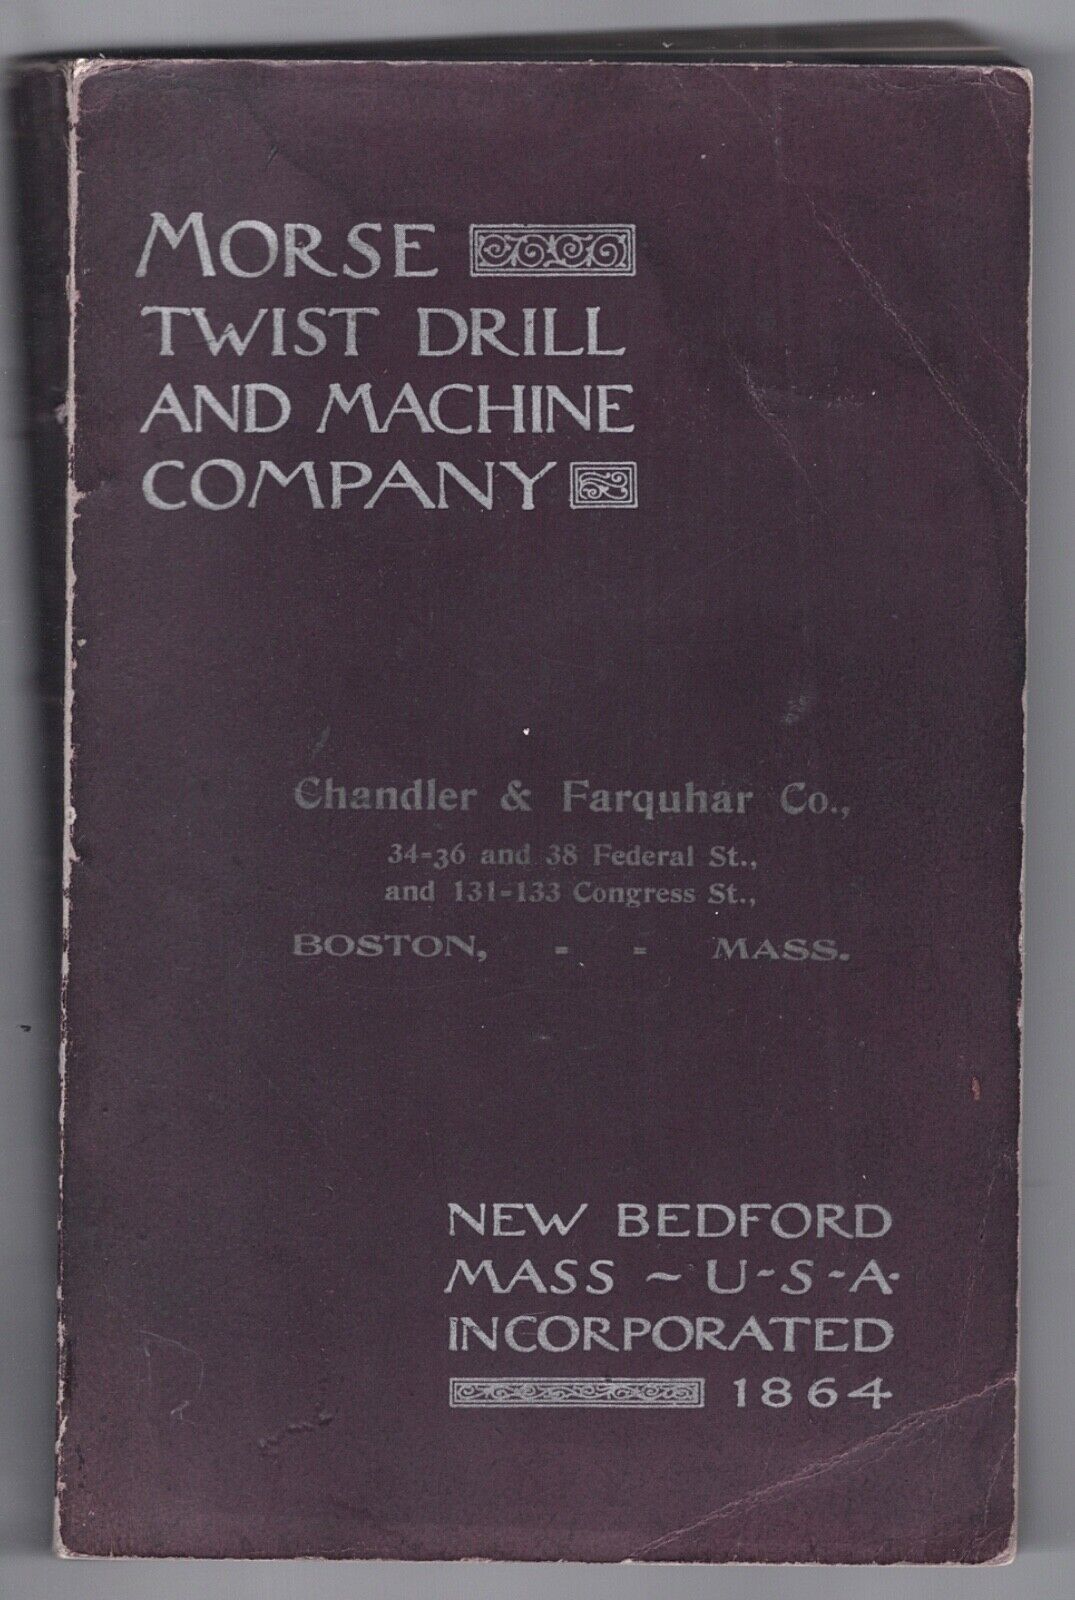 1904 MORSE TWIST BRILL MACHINE CO PAPERBACK CATALOG NEW BEDFORD MA 200 + PP